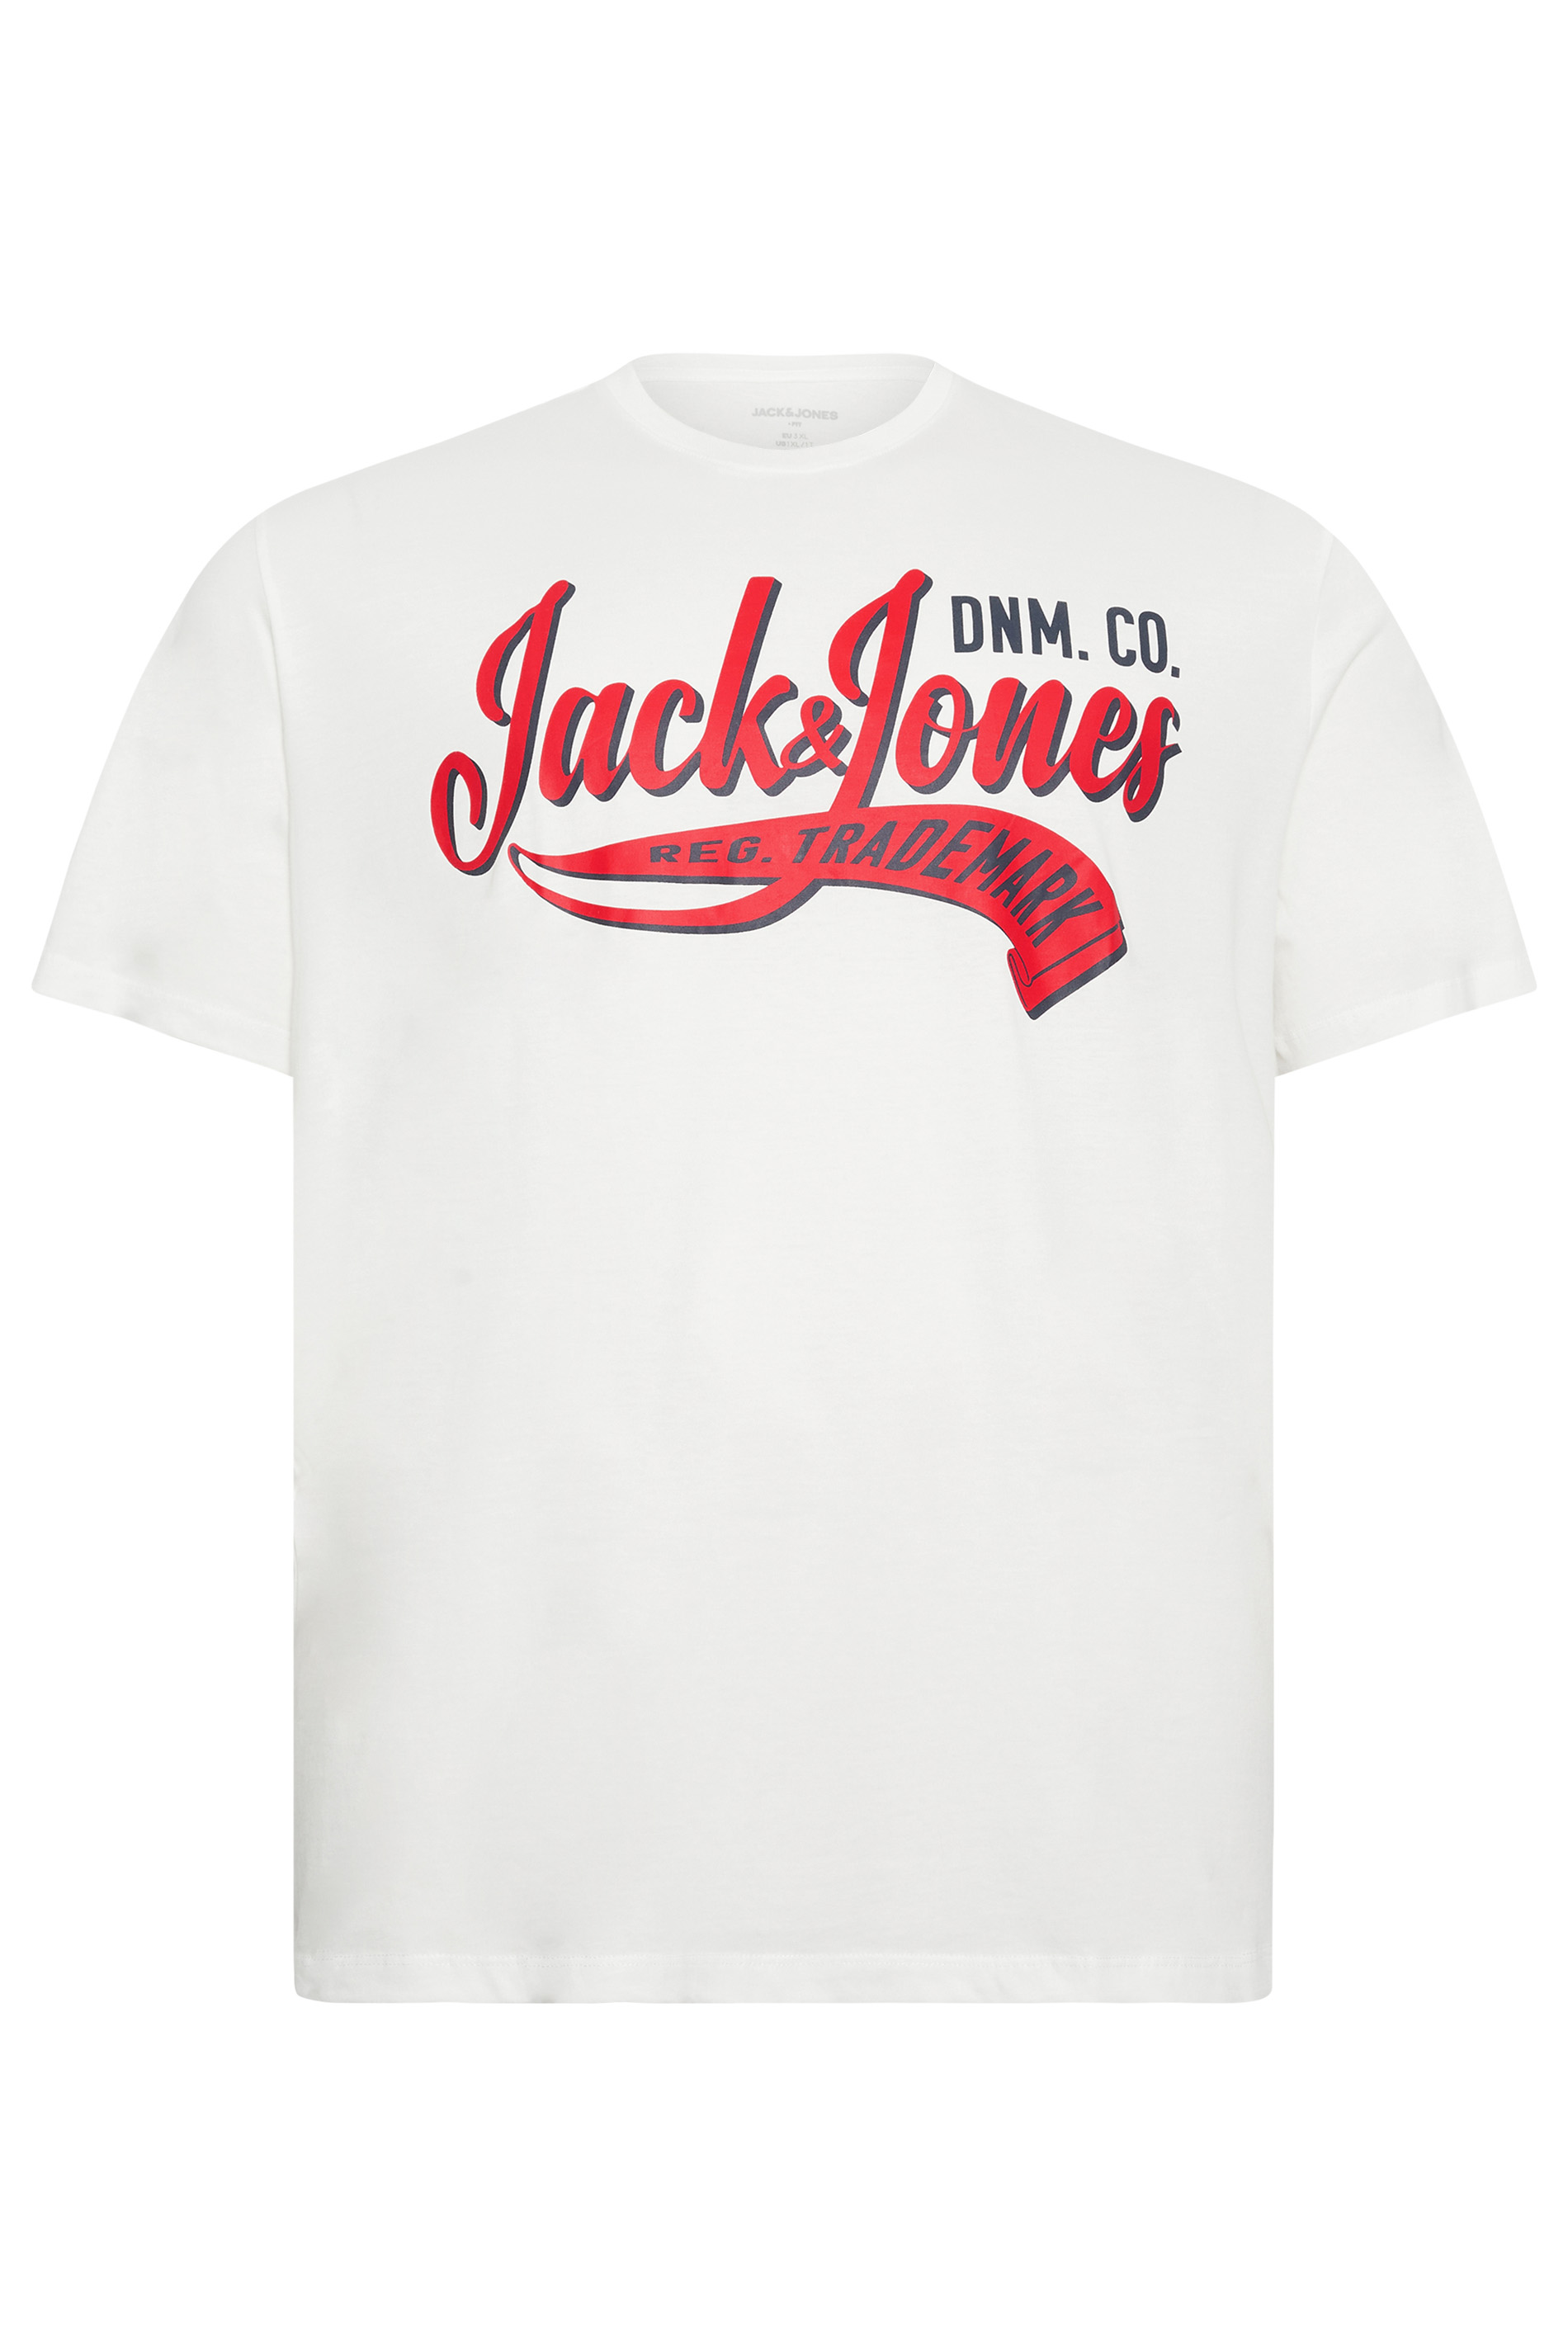 JACK & JONES Big & Tall White 'Trademark' Logo T-Shirt | BadRhino 2